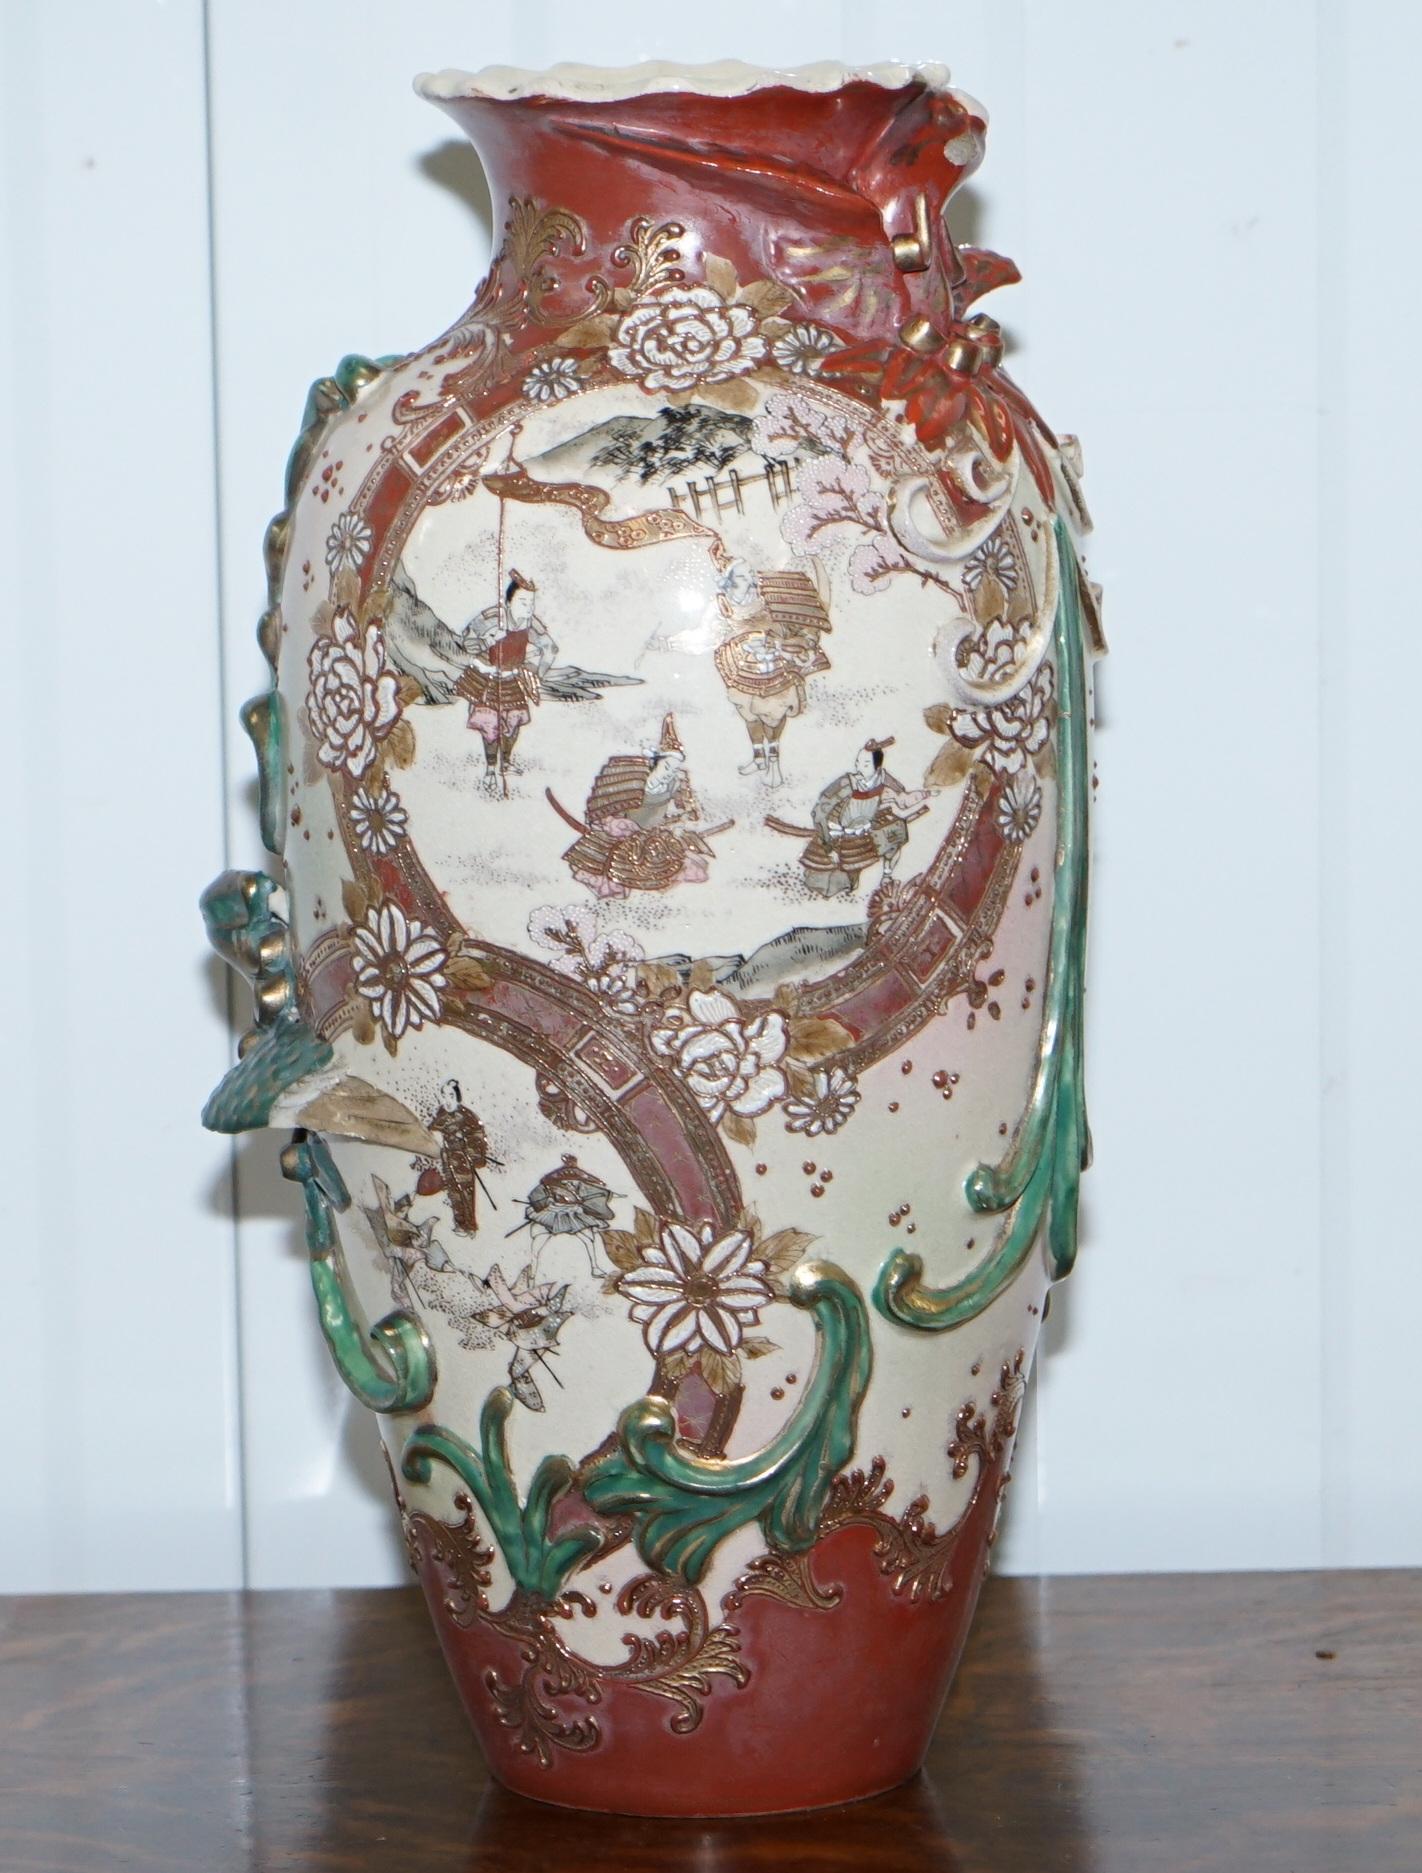 Wir freuen uns, dieses dekorative Paar chinesischer Vasen aus dem frühen 19. Jahrhundert zum Verkauf anbieten zu können, die jeweils auf dem Sockel signiert sind 

Ein sehr schönes Paar um 1830 chinesische Vasen mit originaler Bemalung, sie haben